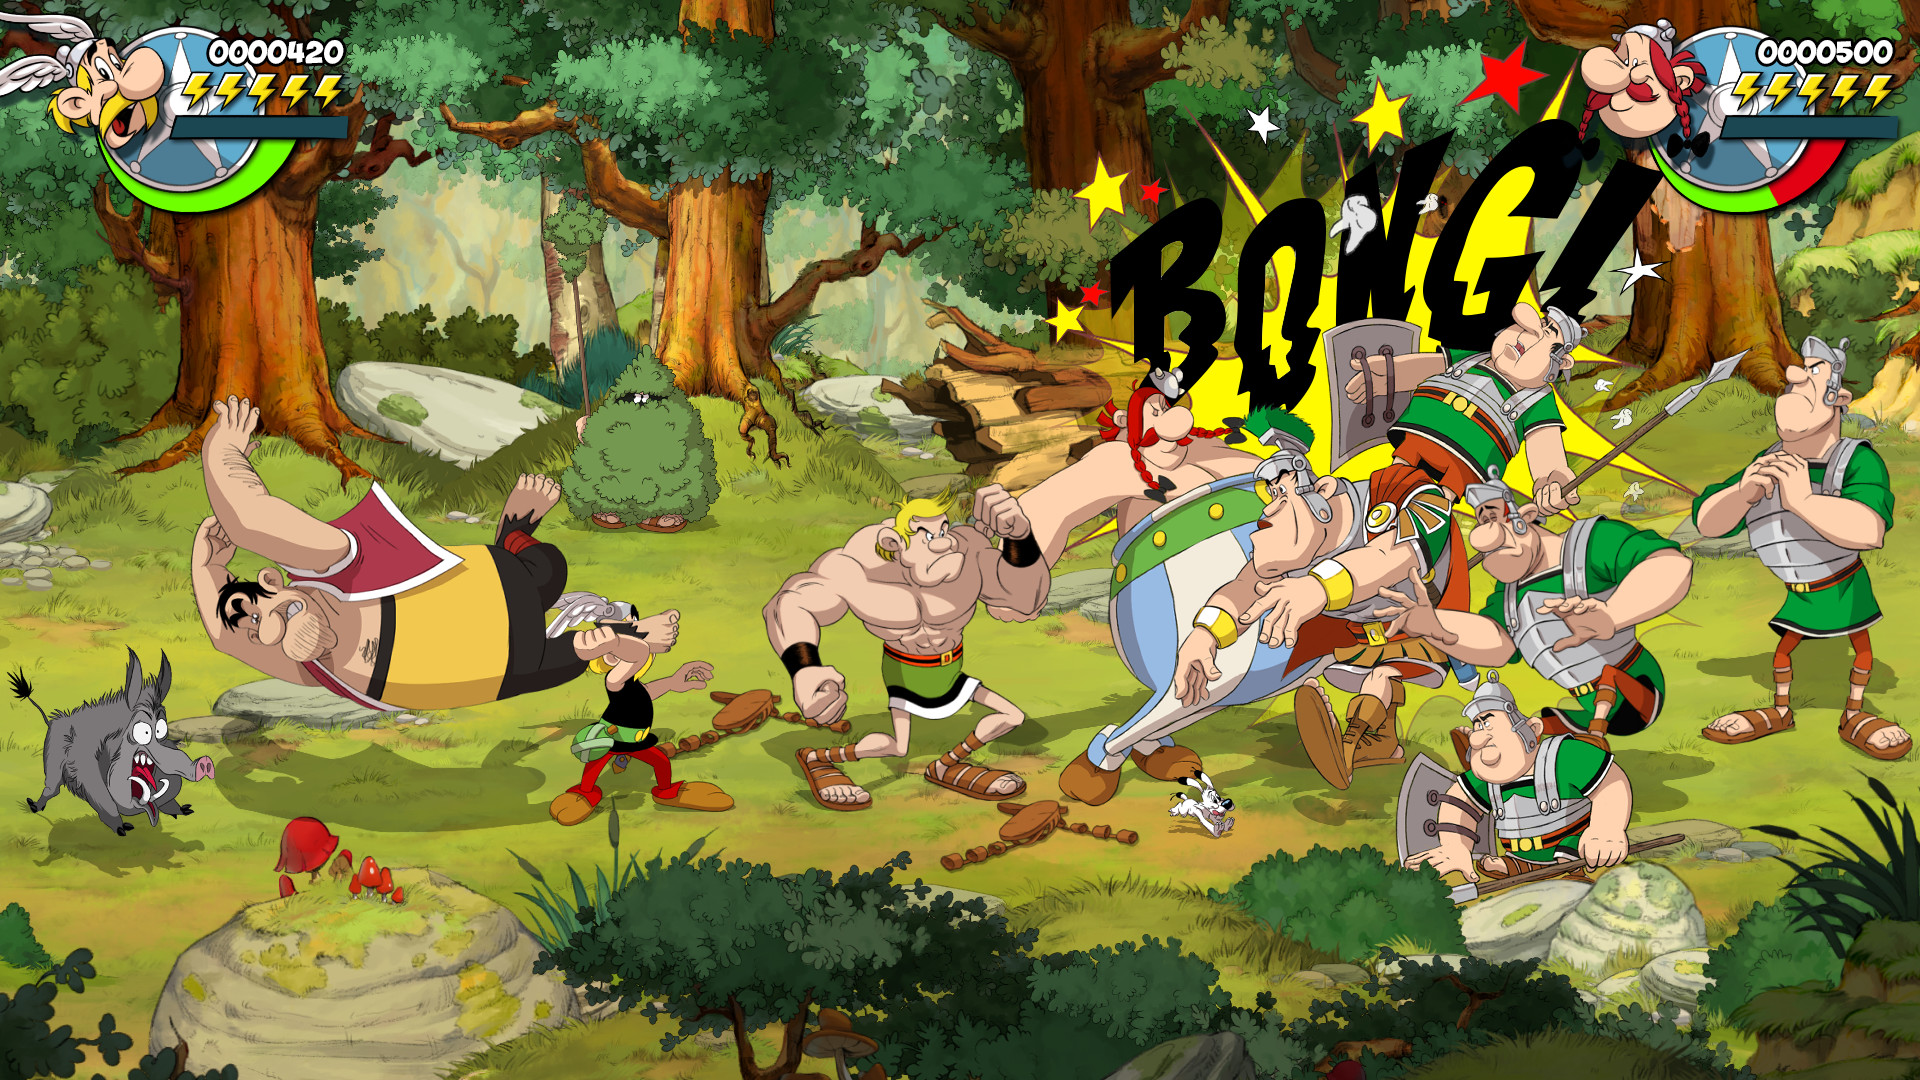 Asterix & Obelix: Slap Them All! Launches